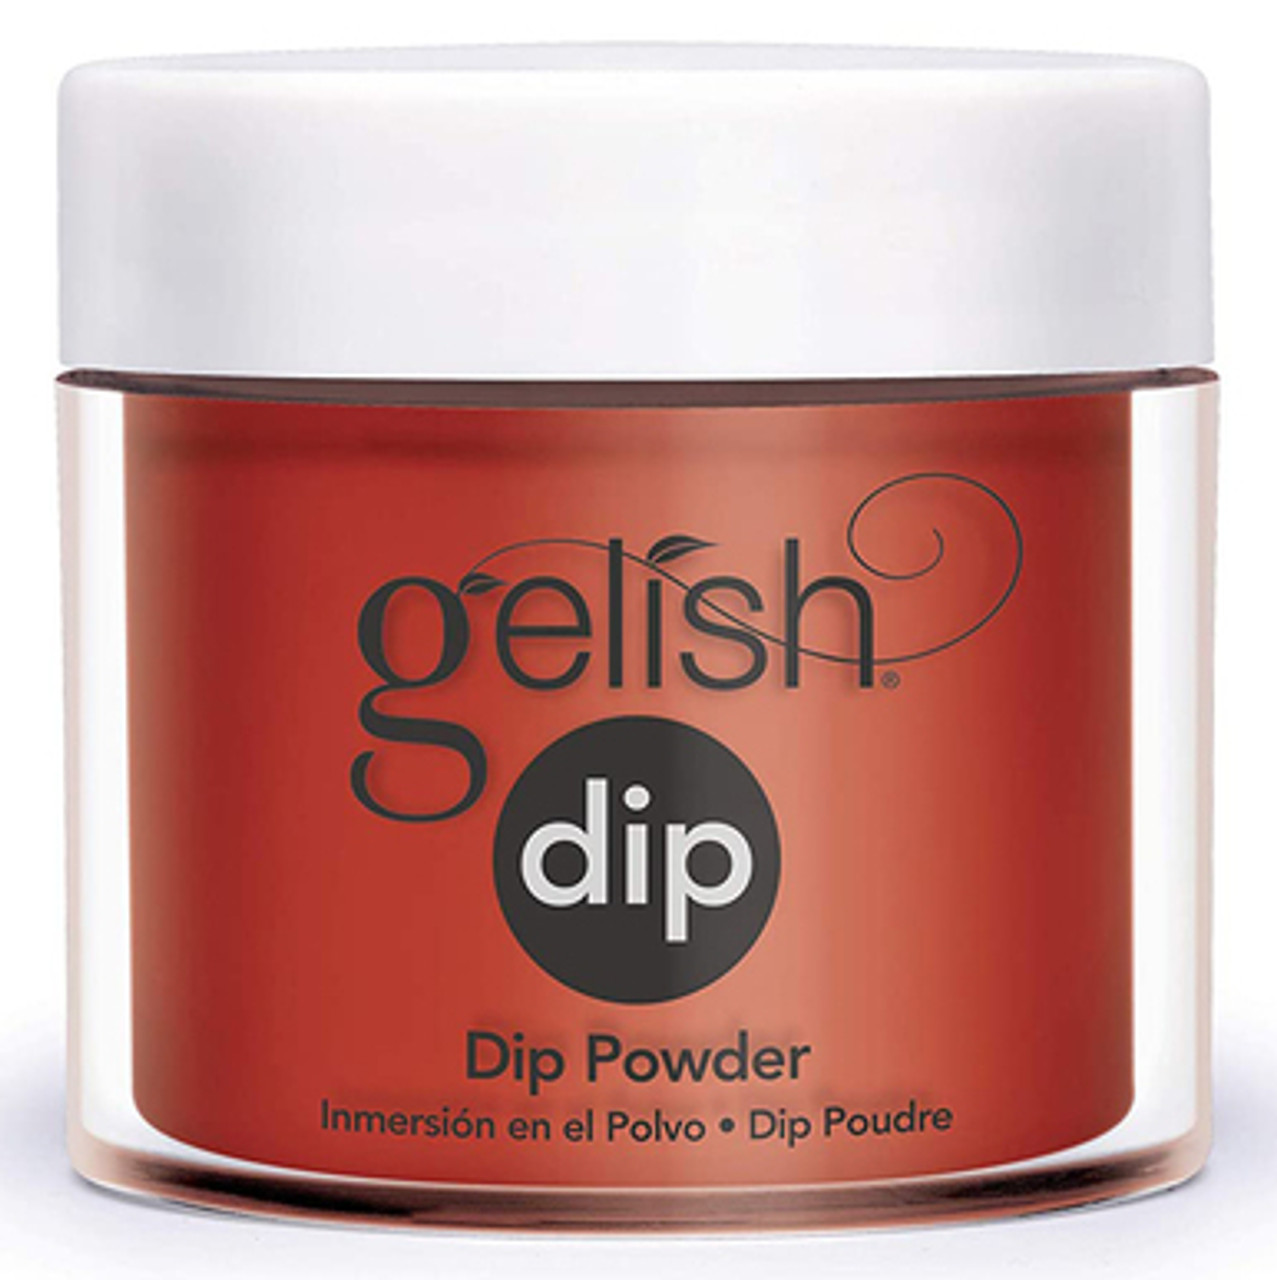 Gelish Dip Powder A Kiss From Marilyn - 0.8 oz / 23 g